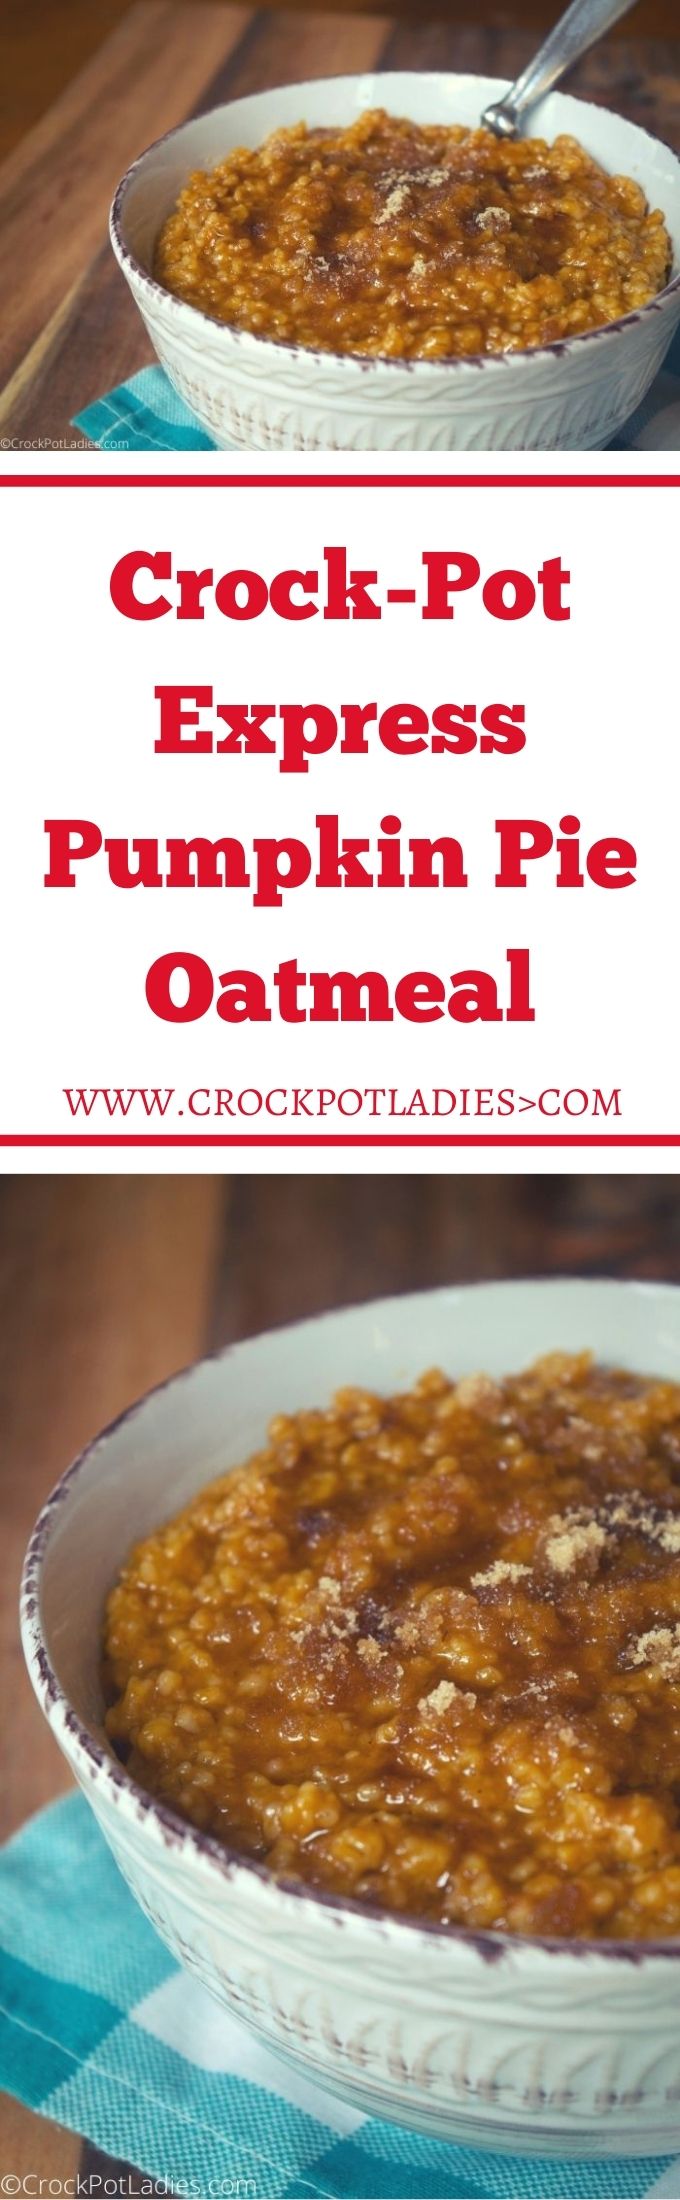 Crock-Pot Express Pumpkin Pie Oatmeal